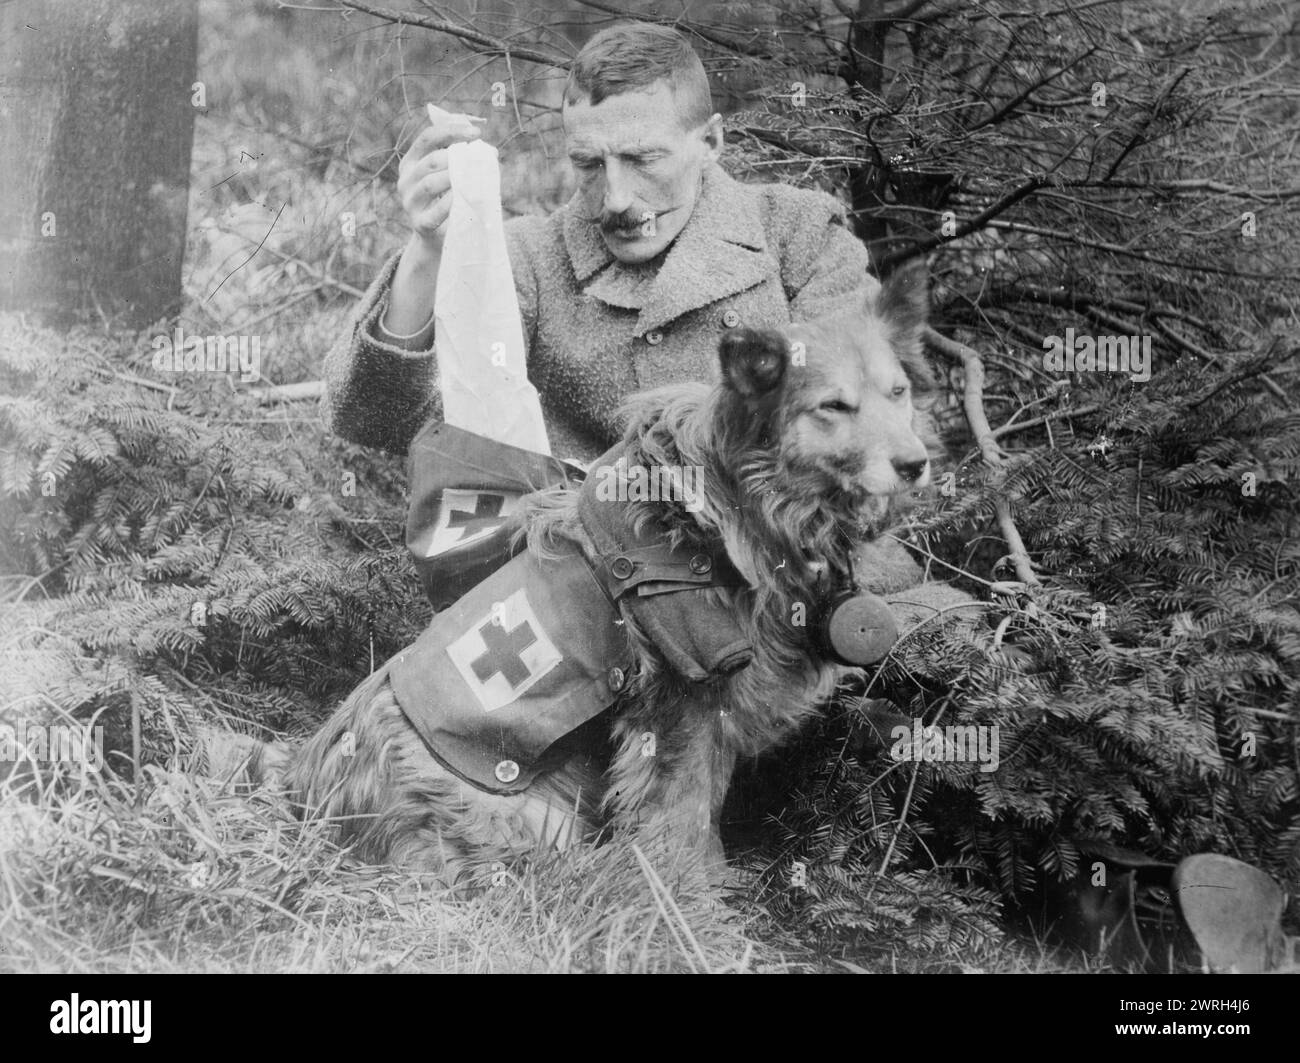 Bende da kit of British Dog, tra il 1914 e il 1915. Uomo che prende bende da un cane, durante la prima guerra mondiale Foto Stock